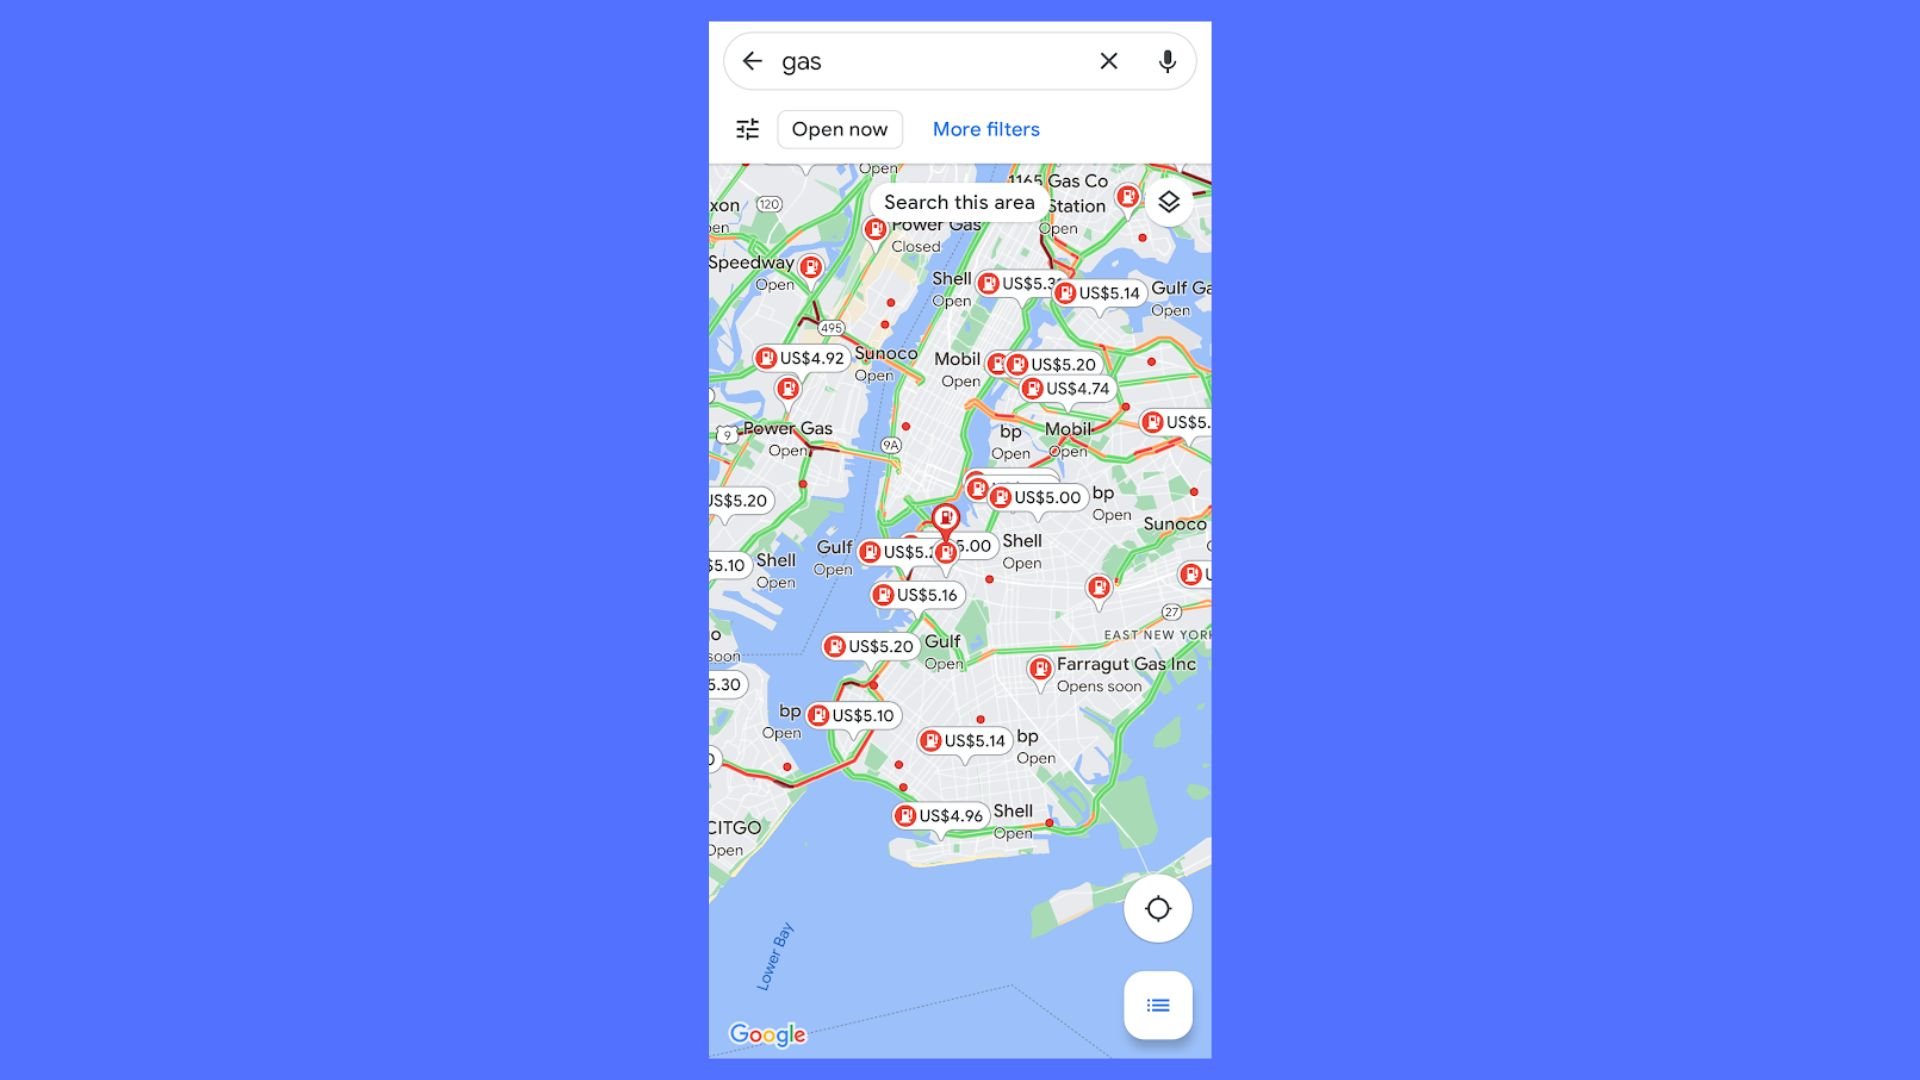 Prezzi del carburante a New York come mostrato su Google Maps